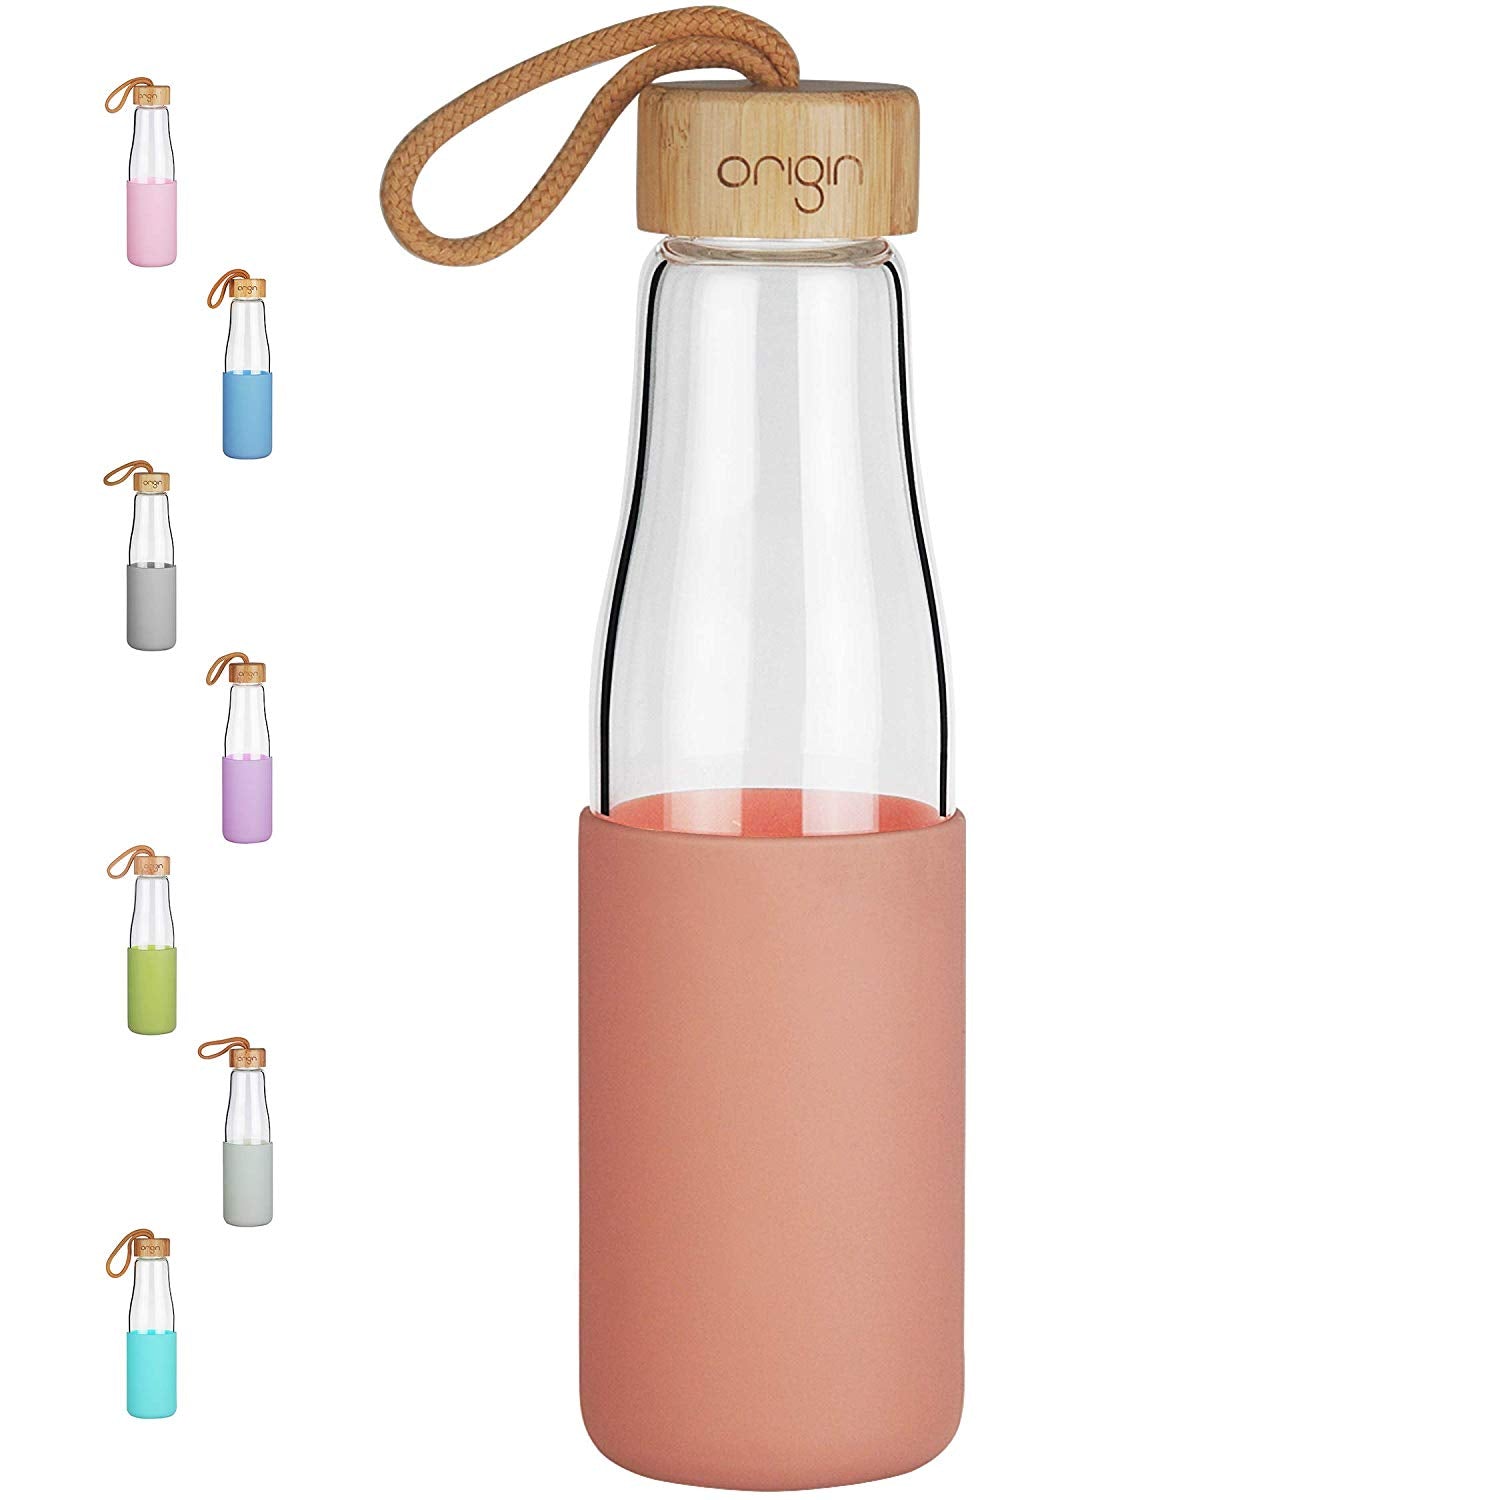 Origin Kids Glass Water Bottle Leak-Proof Flip Cap Lid w/ Protective P -  Origin Glass Co